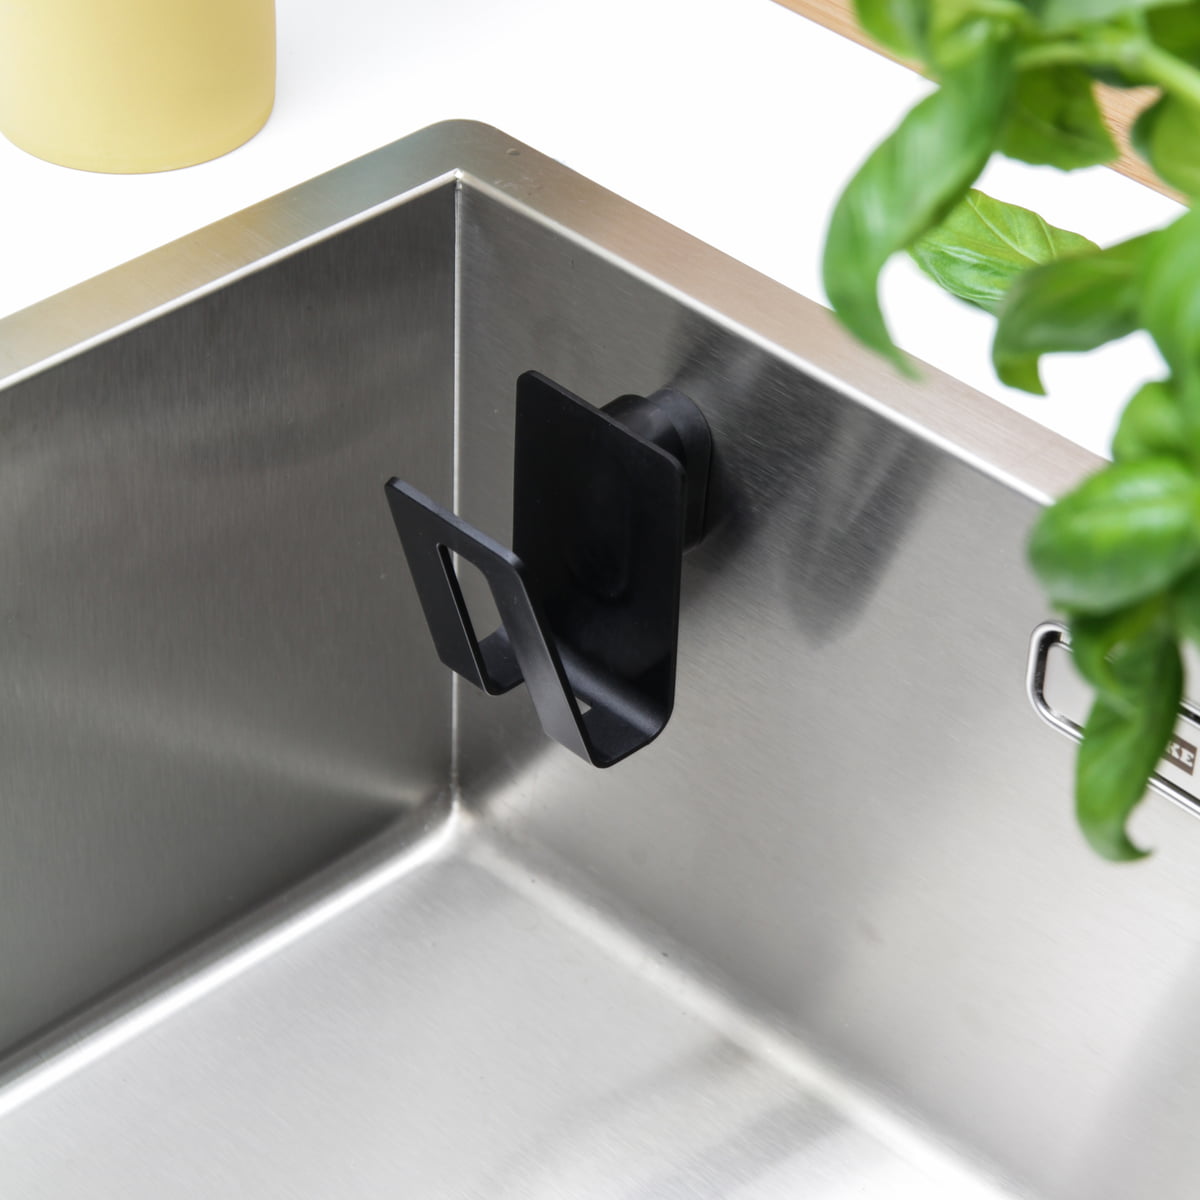 Happy Sinks - Multiholder for sponge or brush, stainless steel